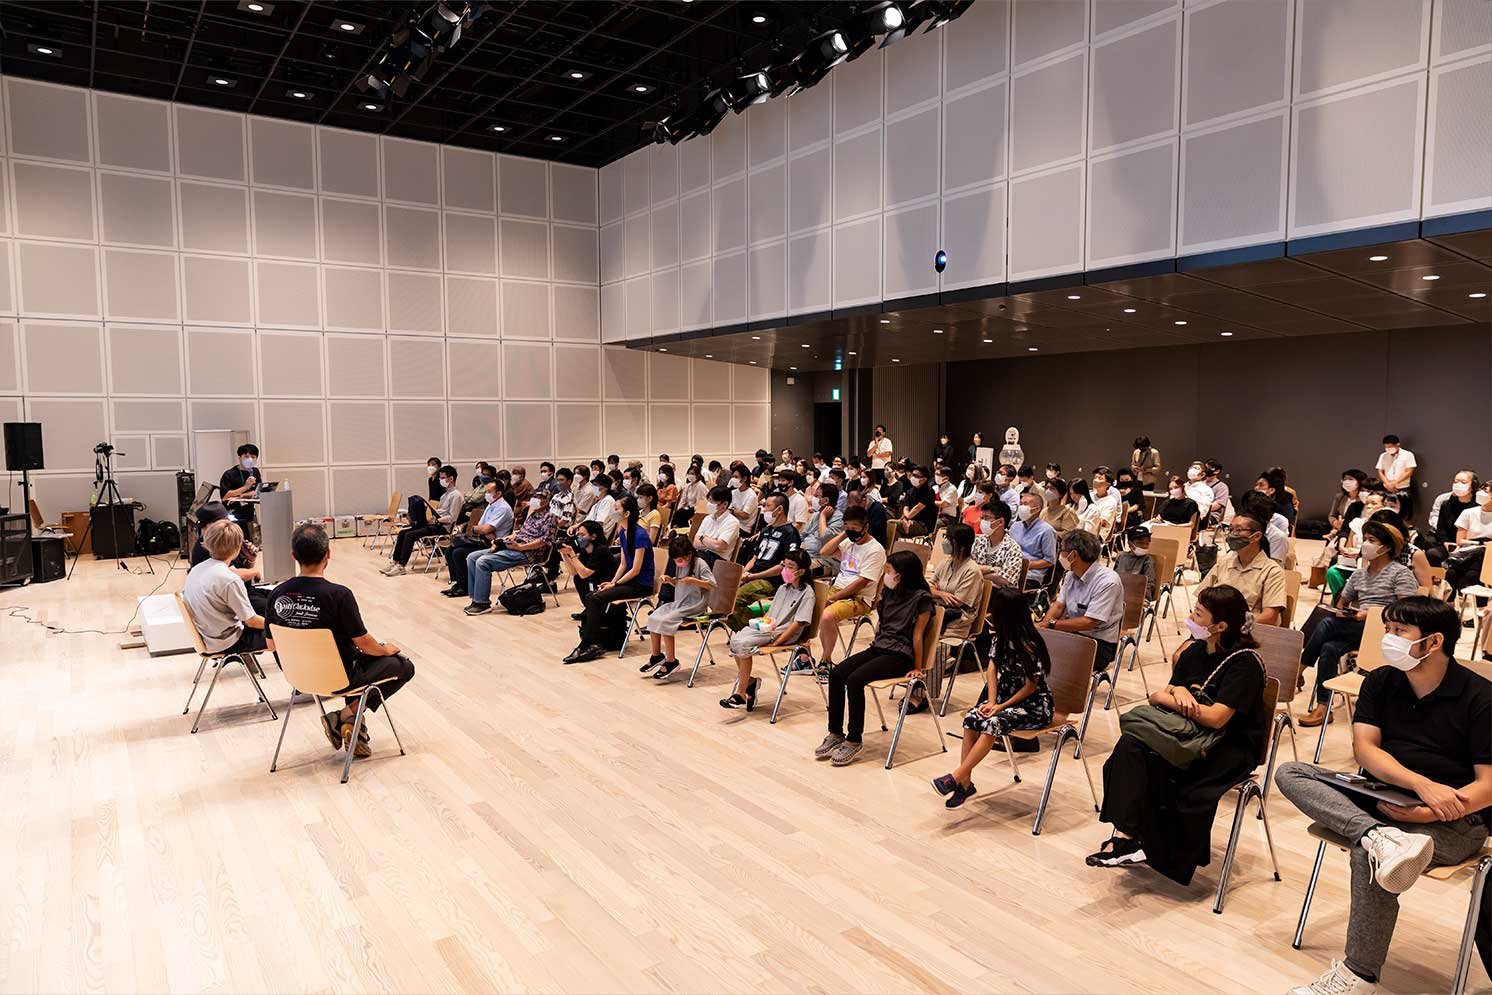 大阪中之島美術館で開催されたイベント『Sound Lab』に集まる150名 | Make New Magazine「未来の定番」をつくるために、パナソニックのリアルな姿を伝えるメディア